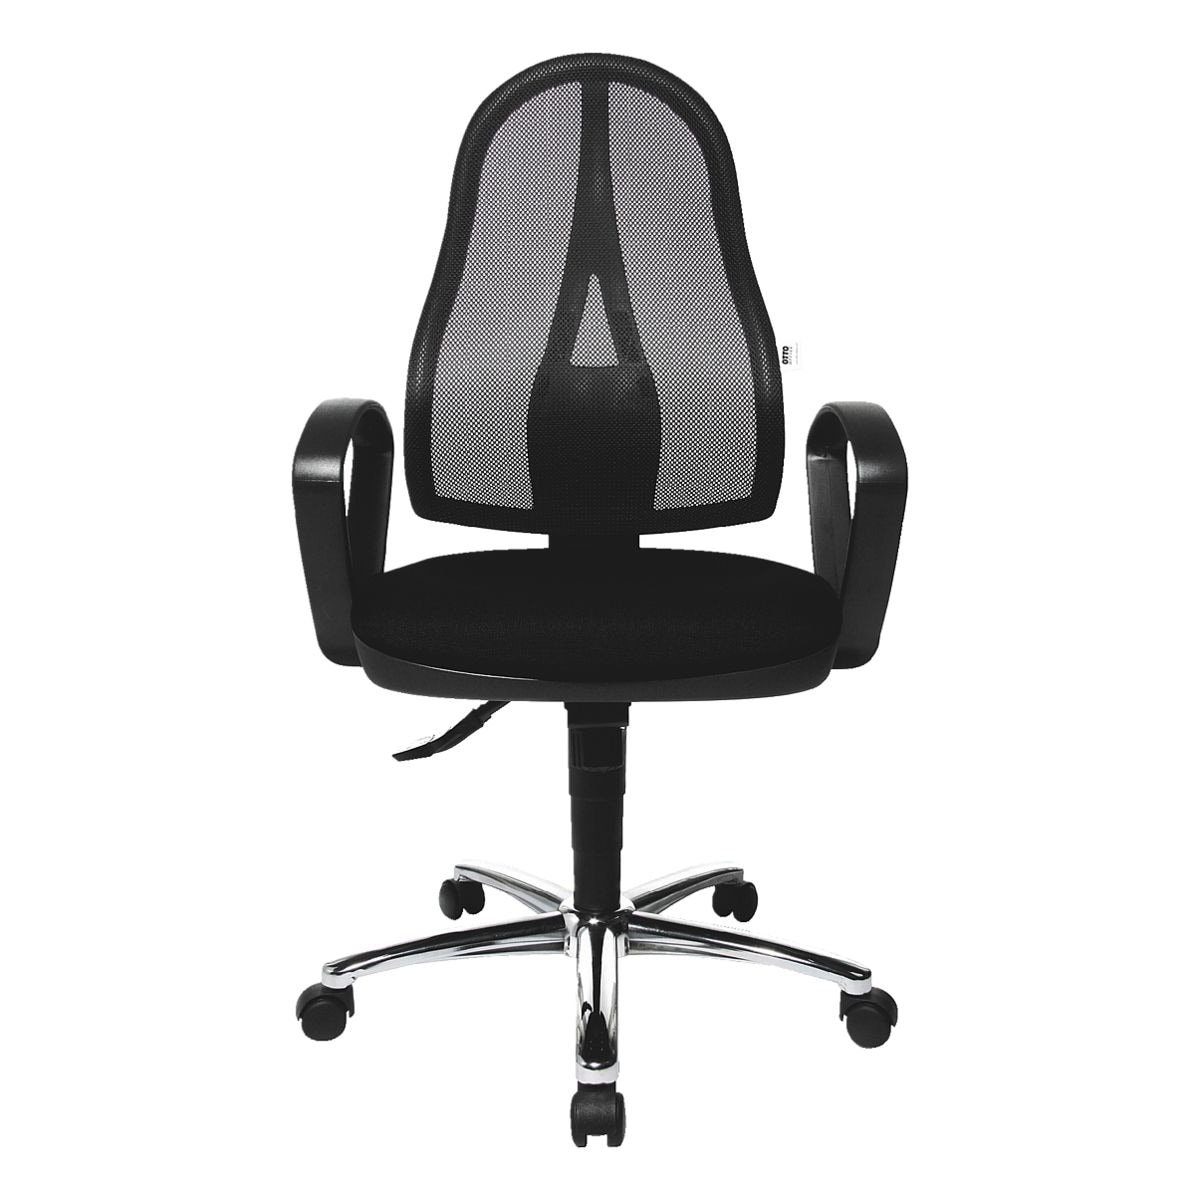 mit Office Armlehnen Standard, festen und Spezial-Muldensitz Otto Office Schreibtischstuhl schwarz